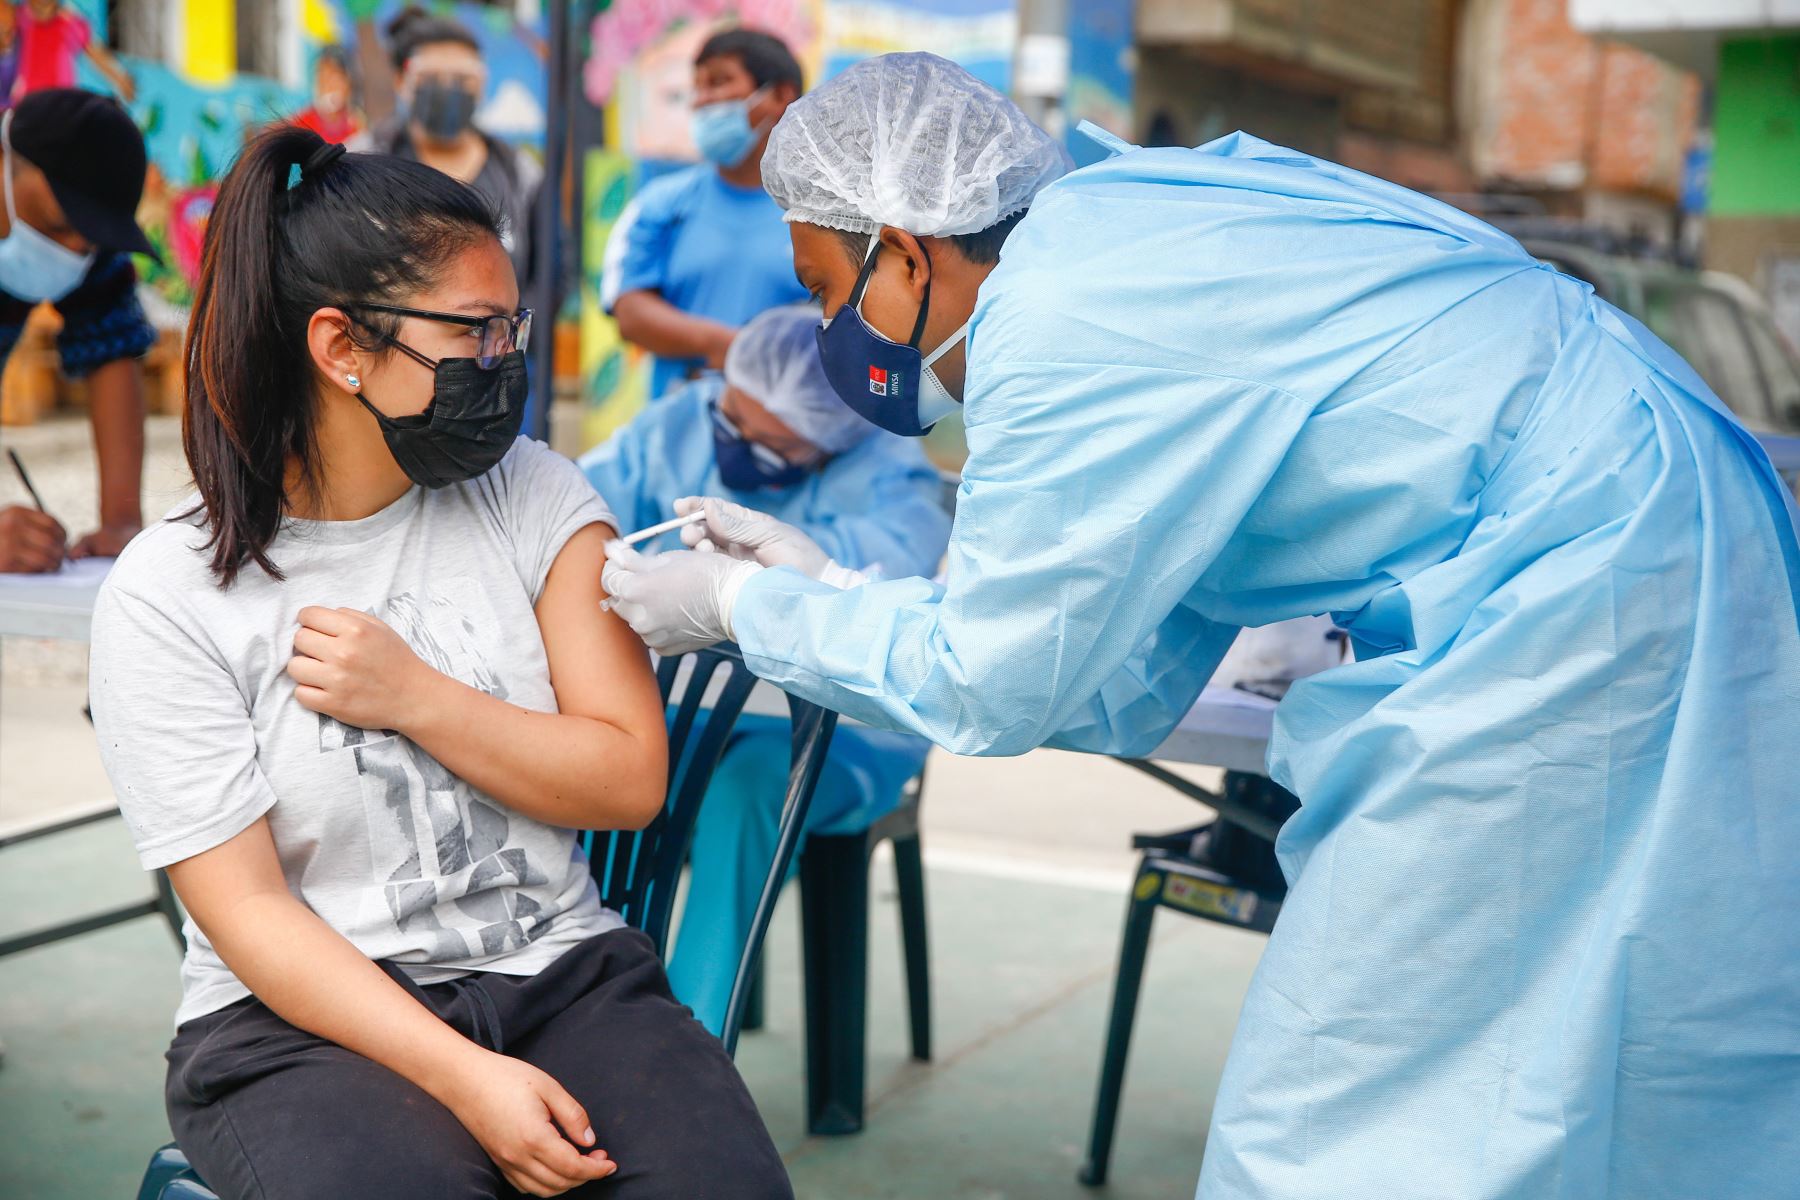 El Minsa anunció hoy el inicio de la vacunación contra el covid-19 a jóvenes de 18, 19 y 20 años de Lima Metropolitana, Callao, Lima región e Ica. Foto: ANDINA/Andrés Valle.